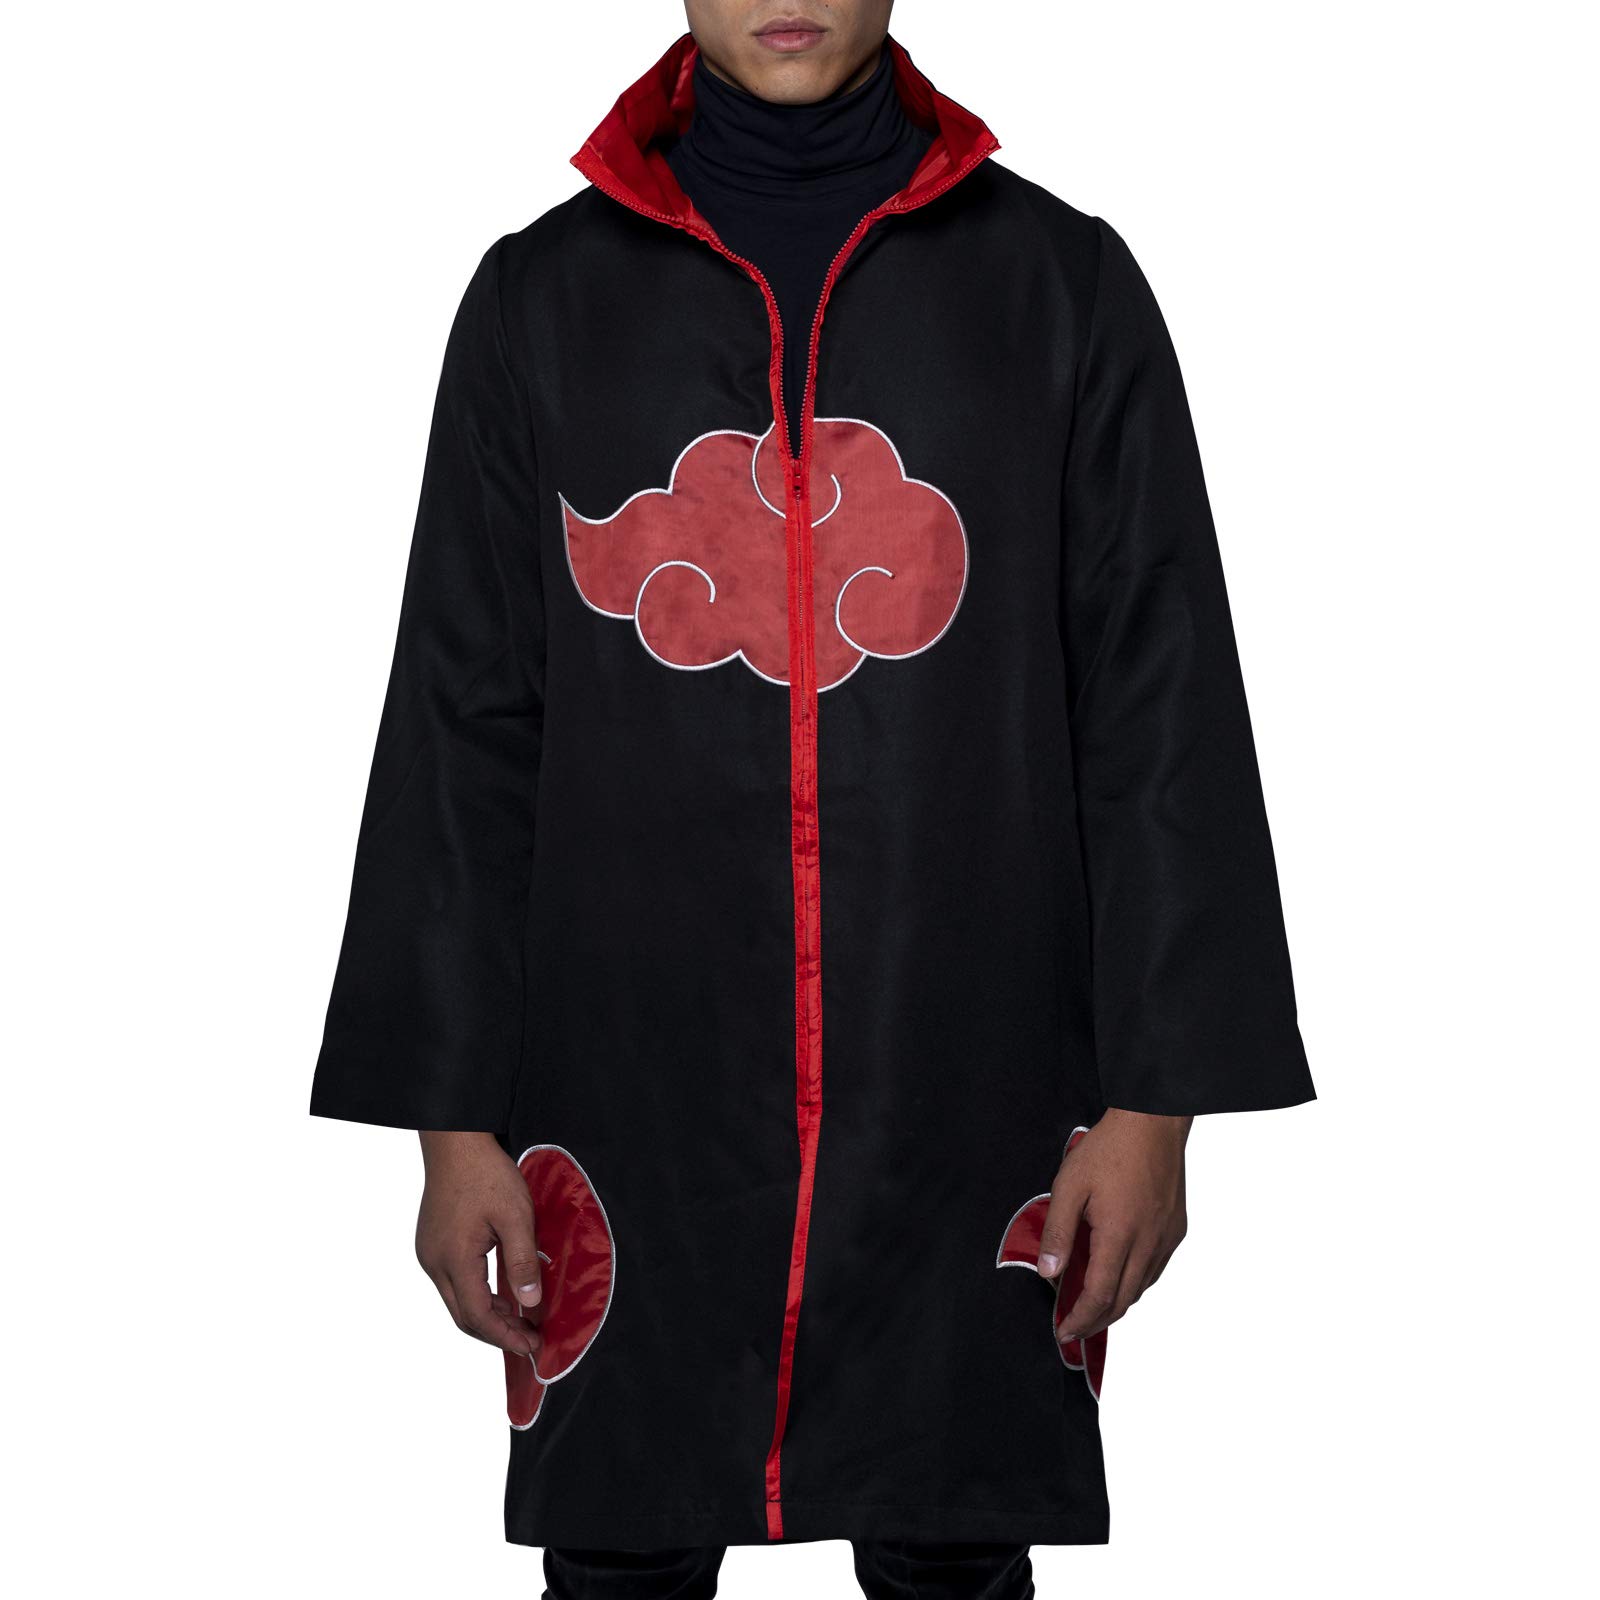 Abbigliamento Naruto Shippuden: ABYstyle - Manteau Akatsuki (Mantello) NUOVO SIGILLATO, EDIZIONE DEL 30/11/2020 SUBITO DISPONIBILE